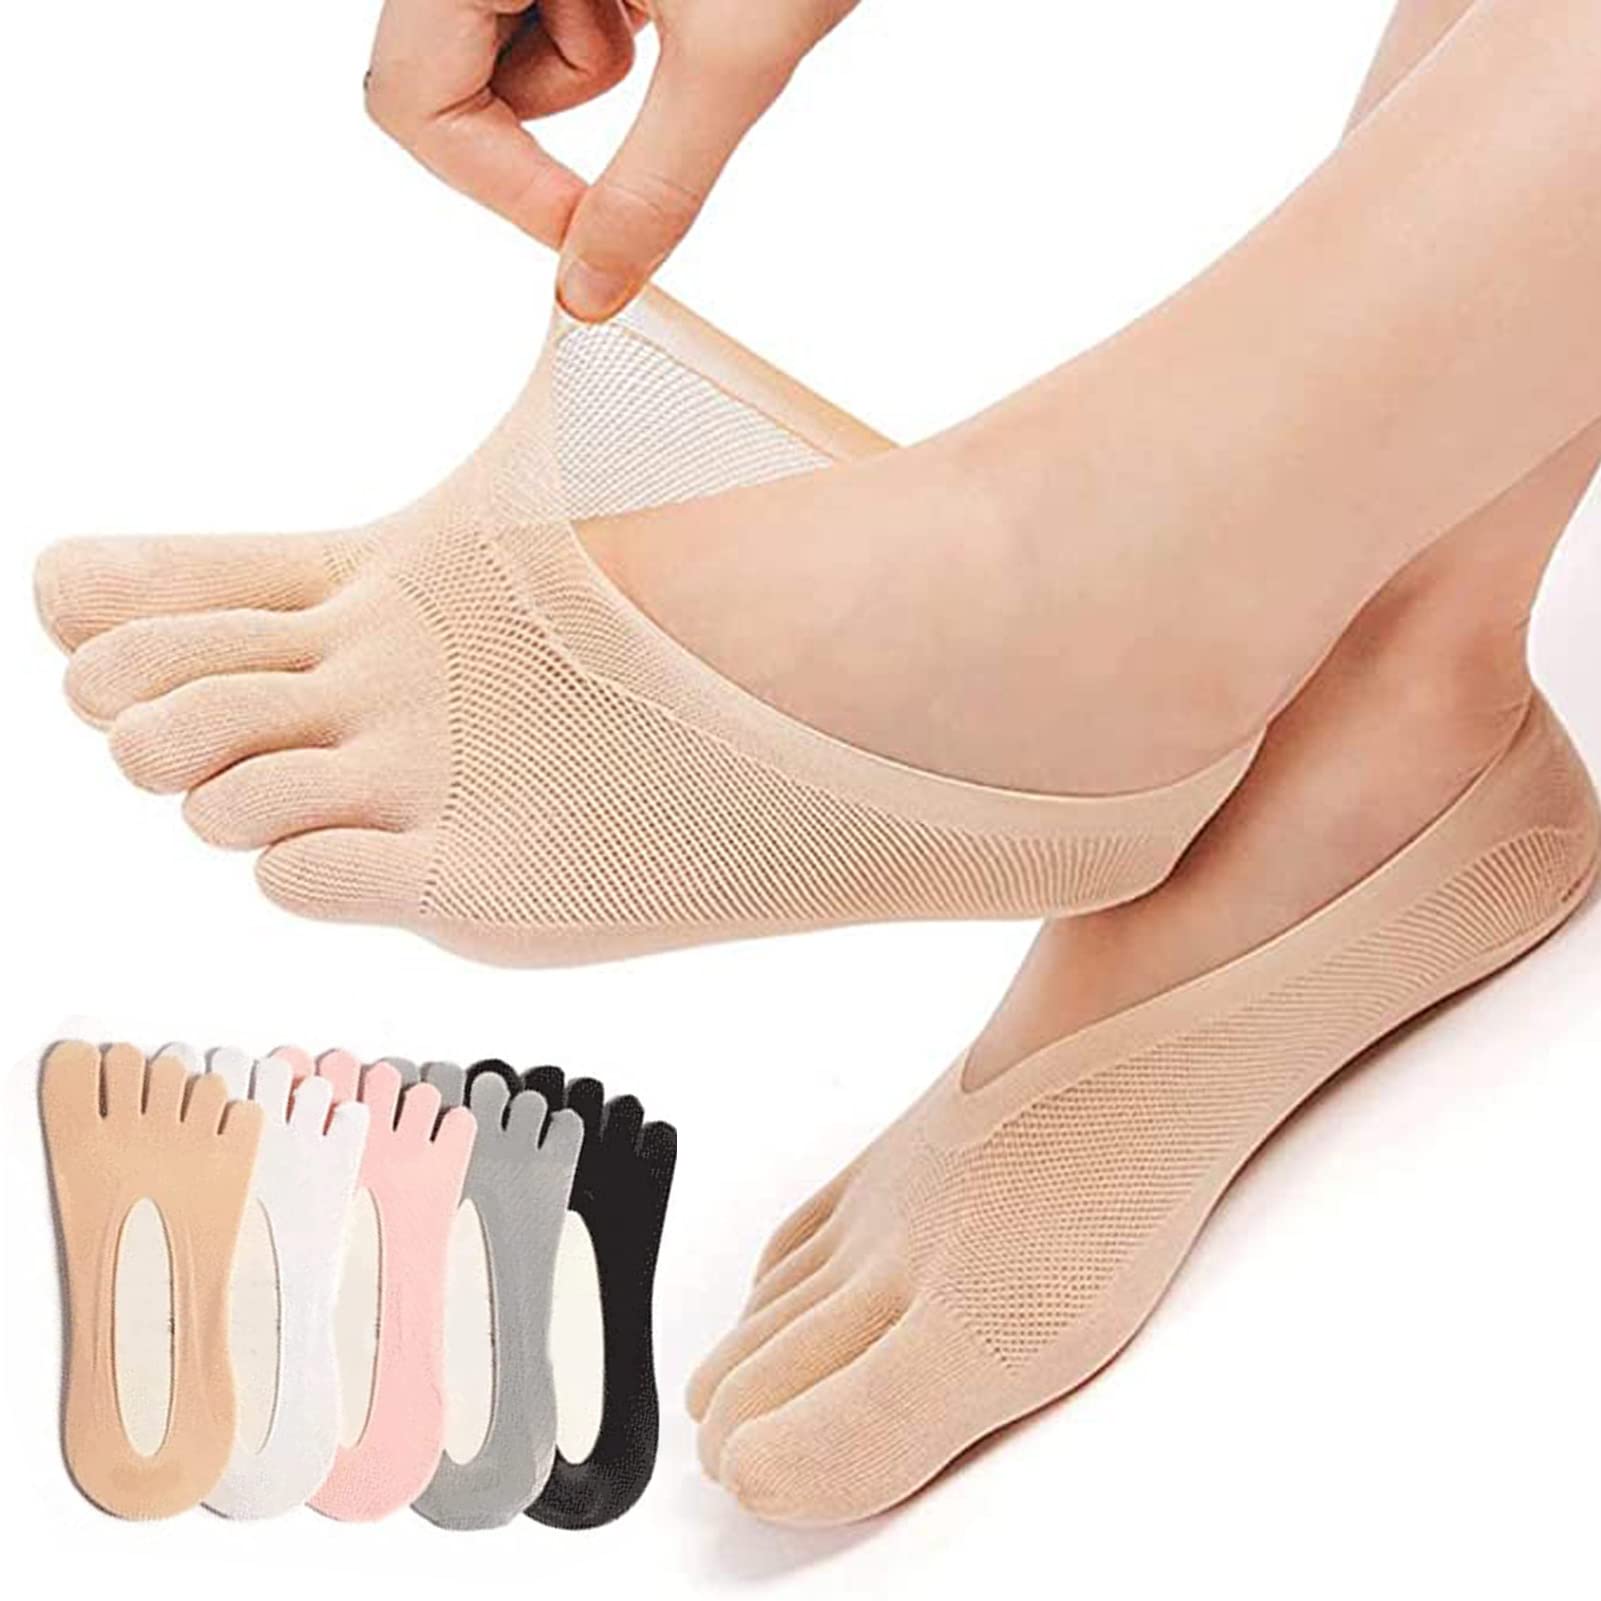 Qauxbul 5 Pairs Sock Align Toe Socks for Bunion, Orthopedic Compression Toe  Sock Women, No Show Low Cut Five Finger Socks Toe Socks-B